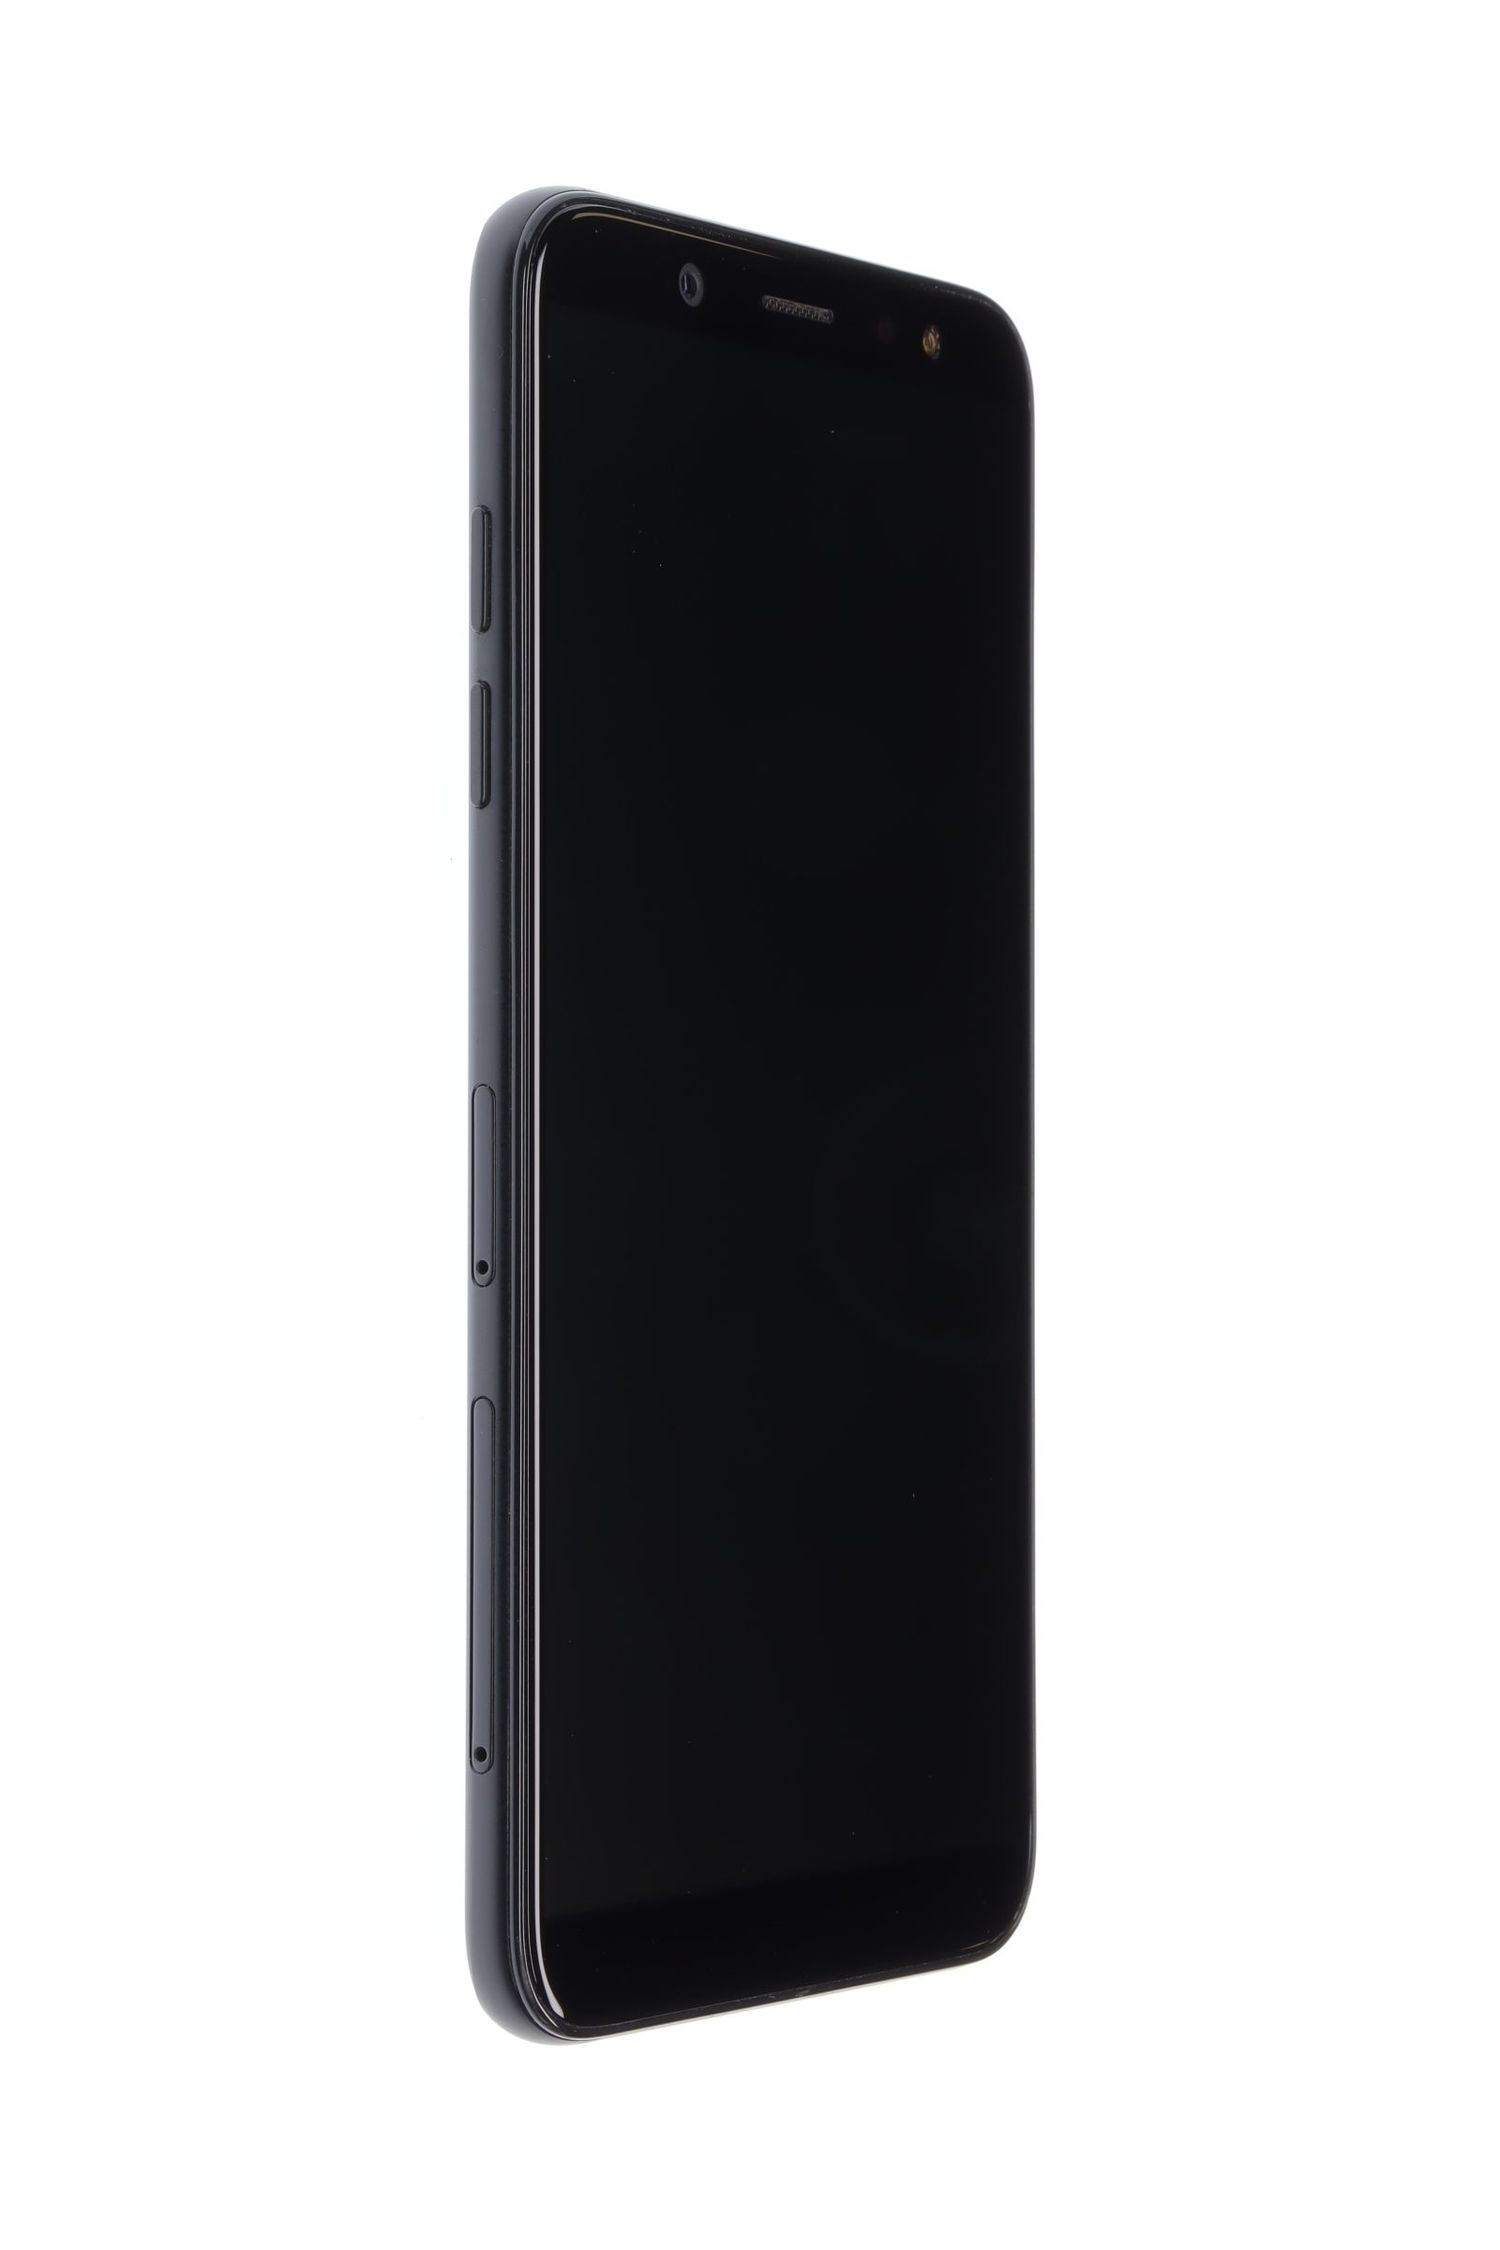 Κινητό τηλέφωνο Samsung Galaxy A6 (2018) Dual Sim, Black, 32 GB, Excelent